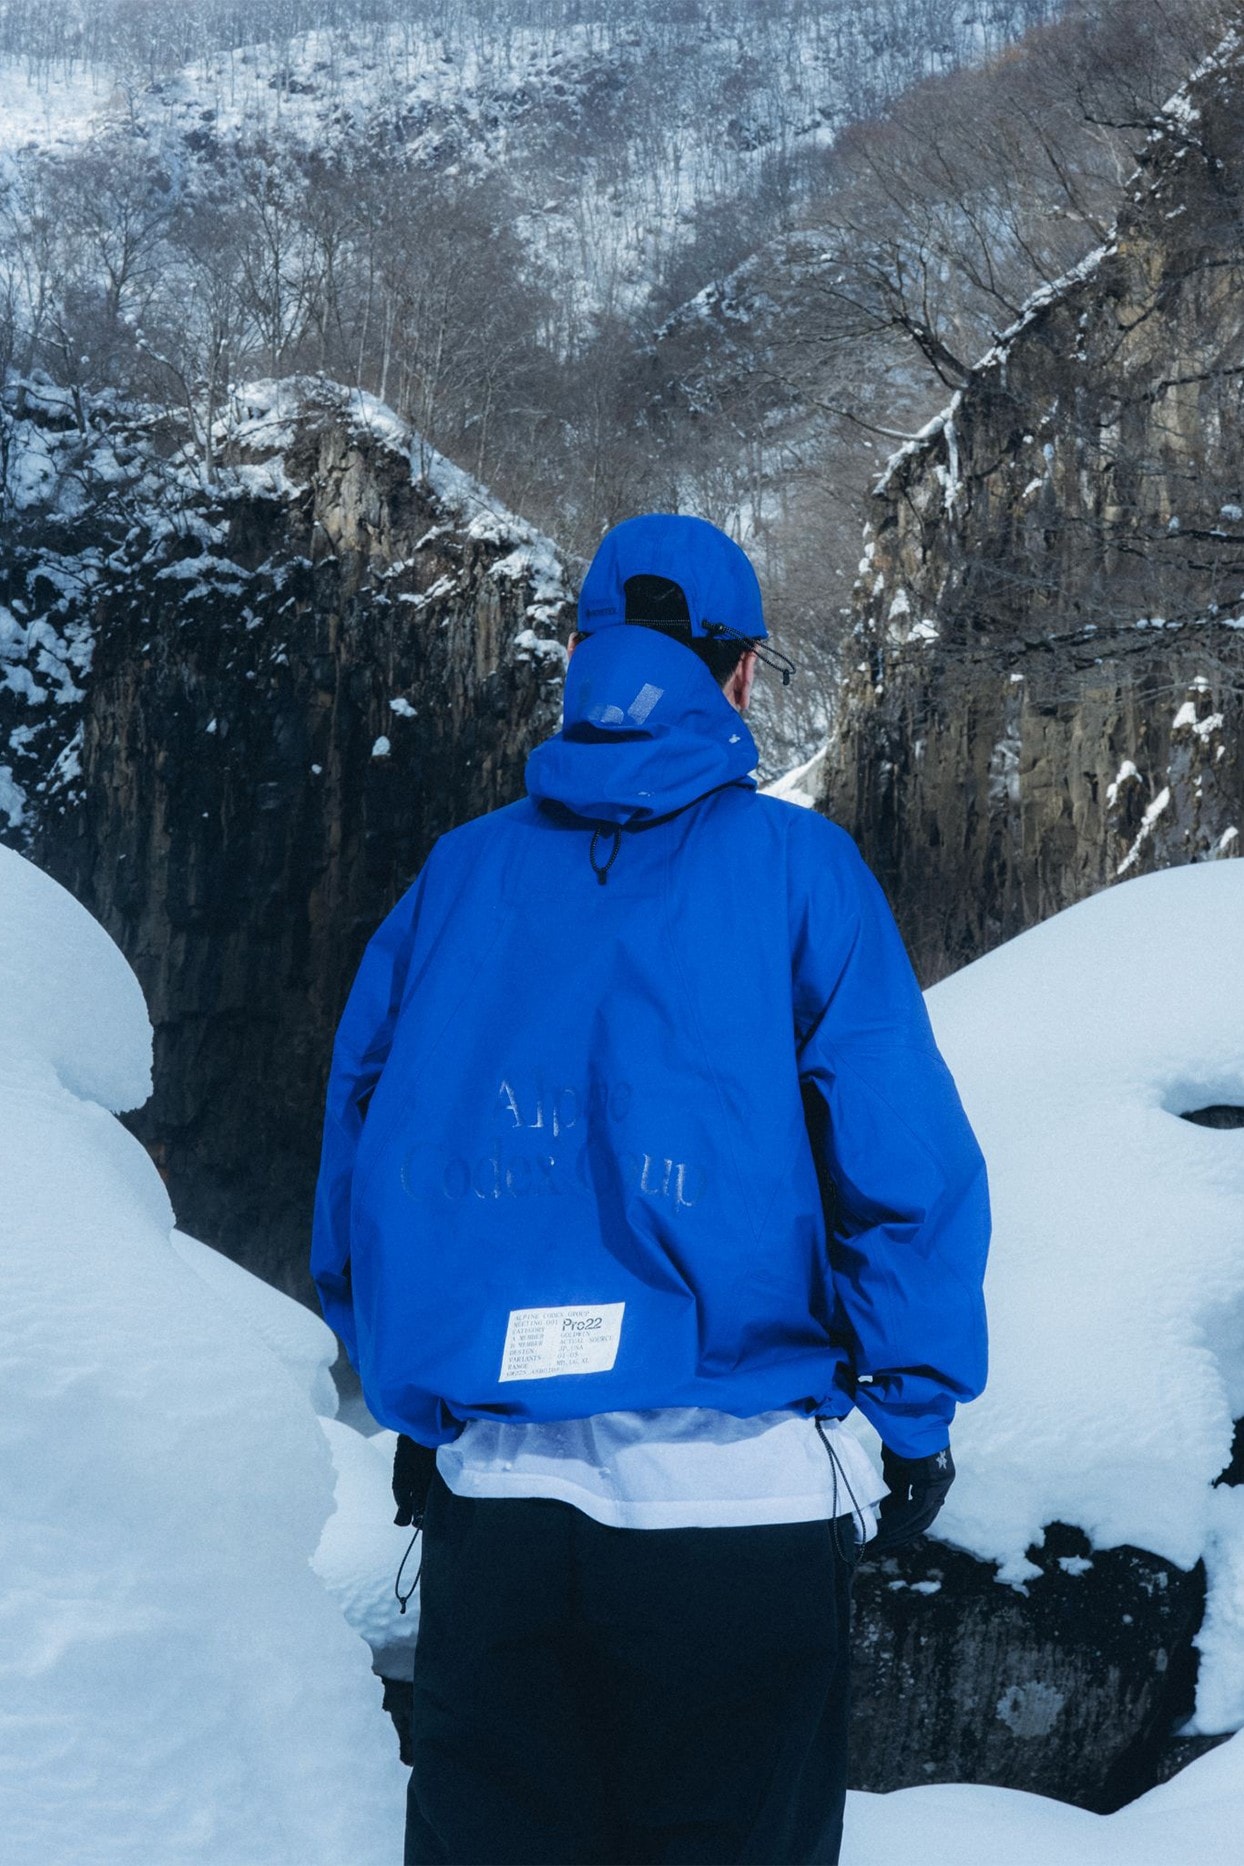 日本戶外品牌 Goldwin 為虛擬徒步旅行團體「Alpine Codex Group」打造獨佔服飾